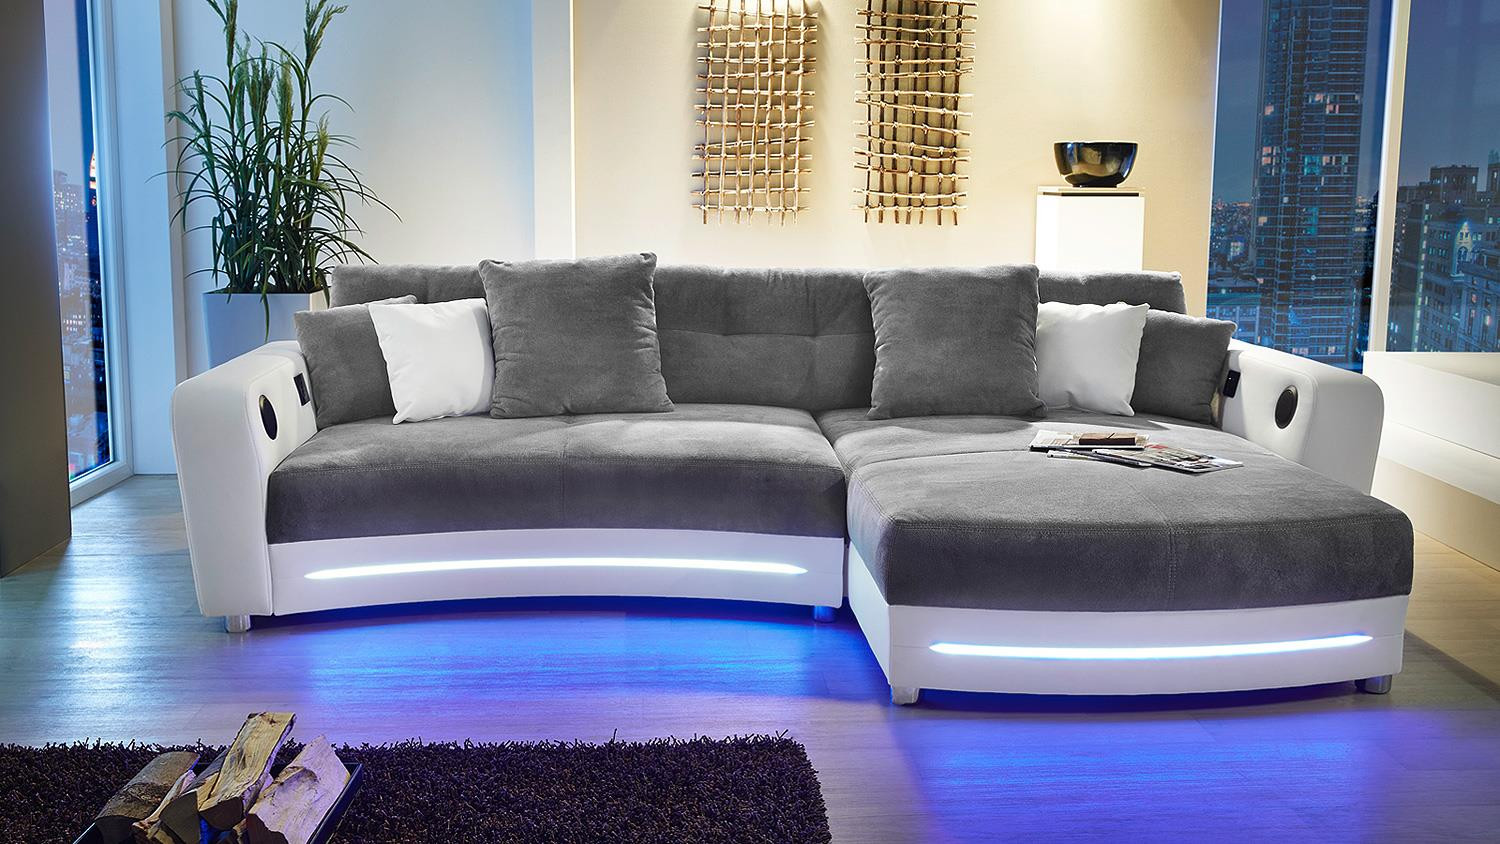 Sofa Mit Led
 Wohnlandschaft LAREDO Sofa weiß grau mit LED und Soundsystem